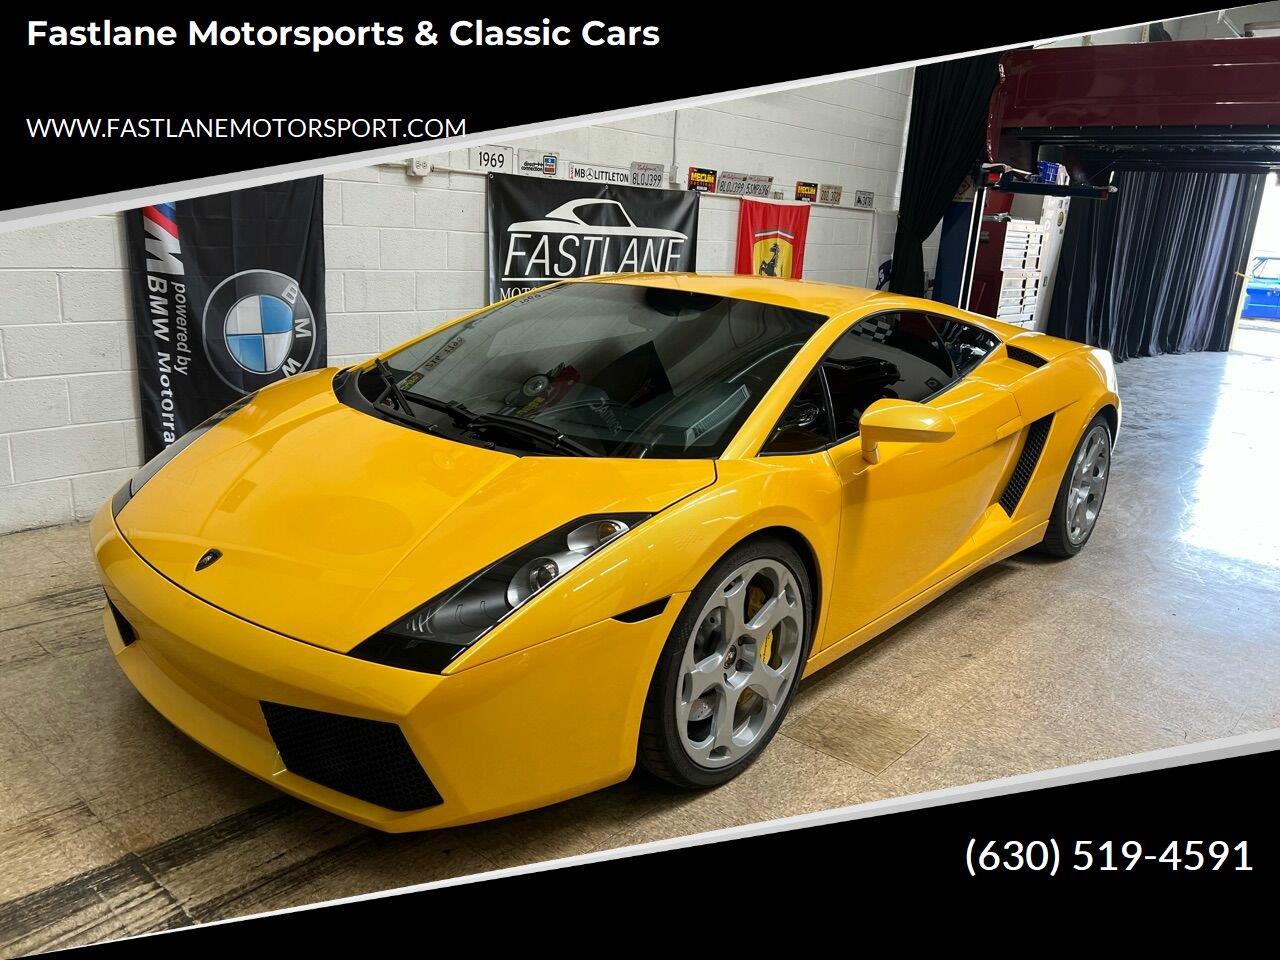 For Sale: 2004 Lamborghini Gallardo in Addison, Illinois for sale in Addison, IL